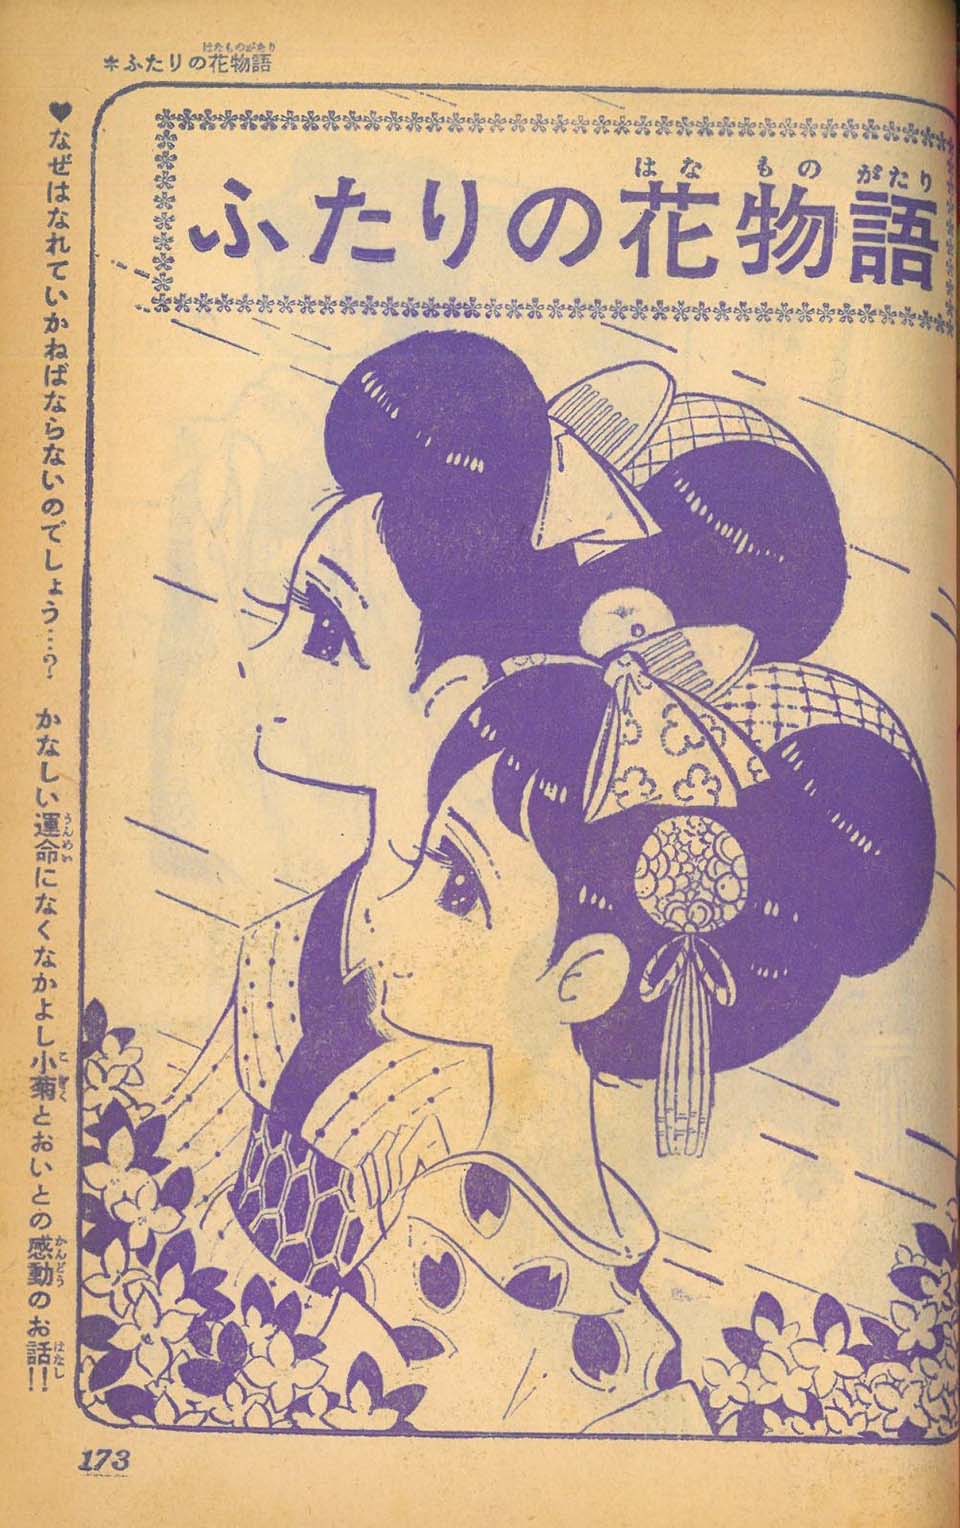 「竹本みつる「ふたりの花ものがたり」『別冊りぼん』版 1966年1月15日春の号」